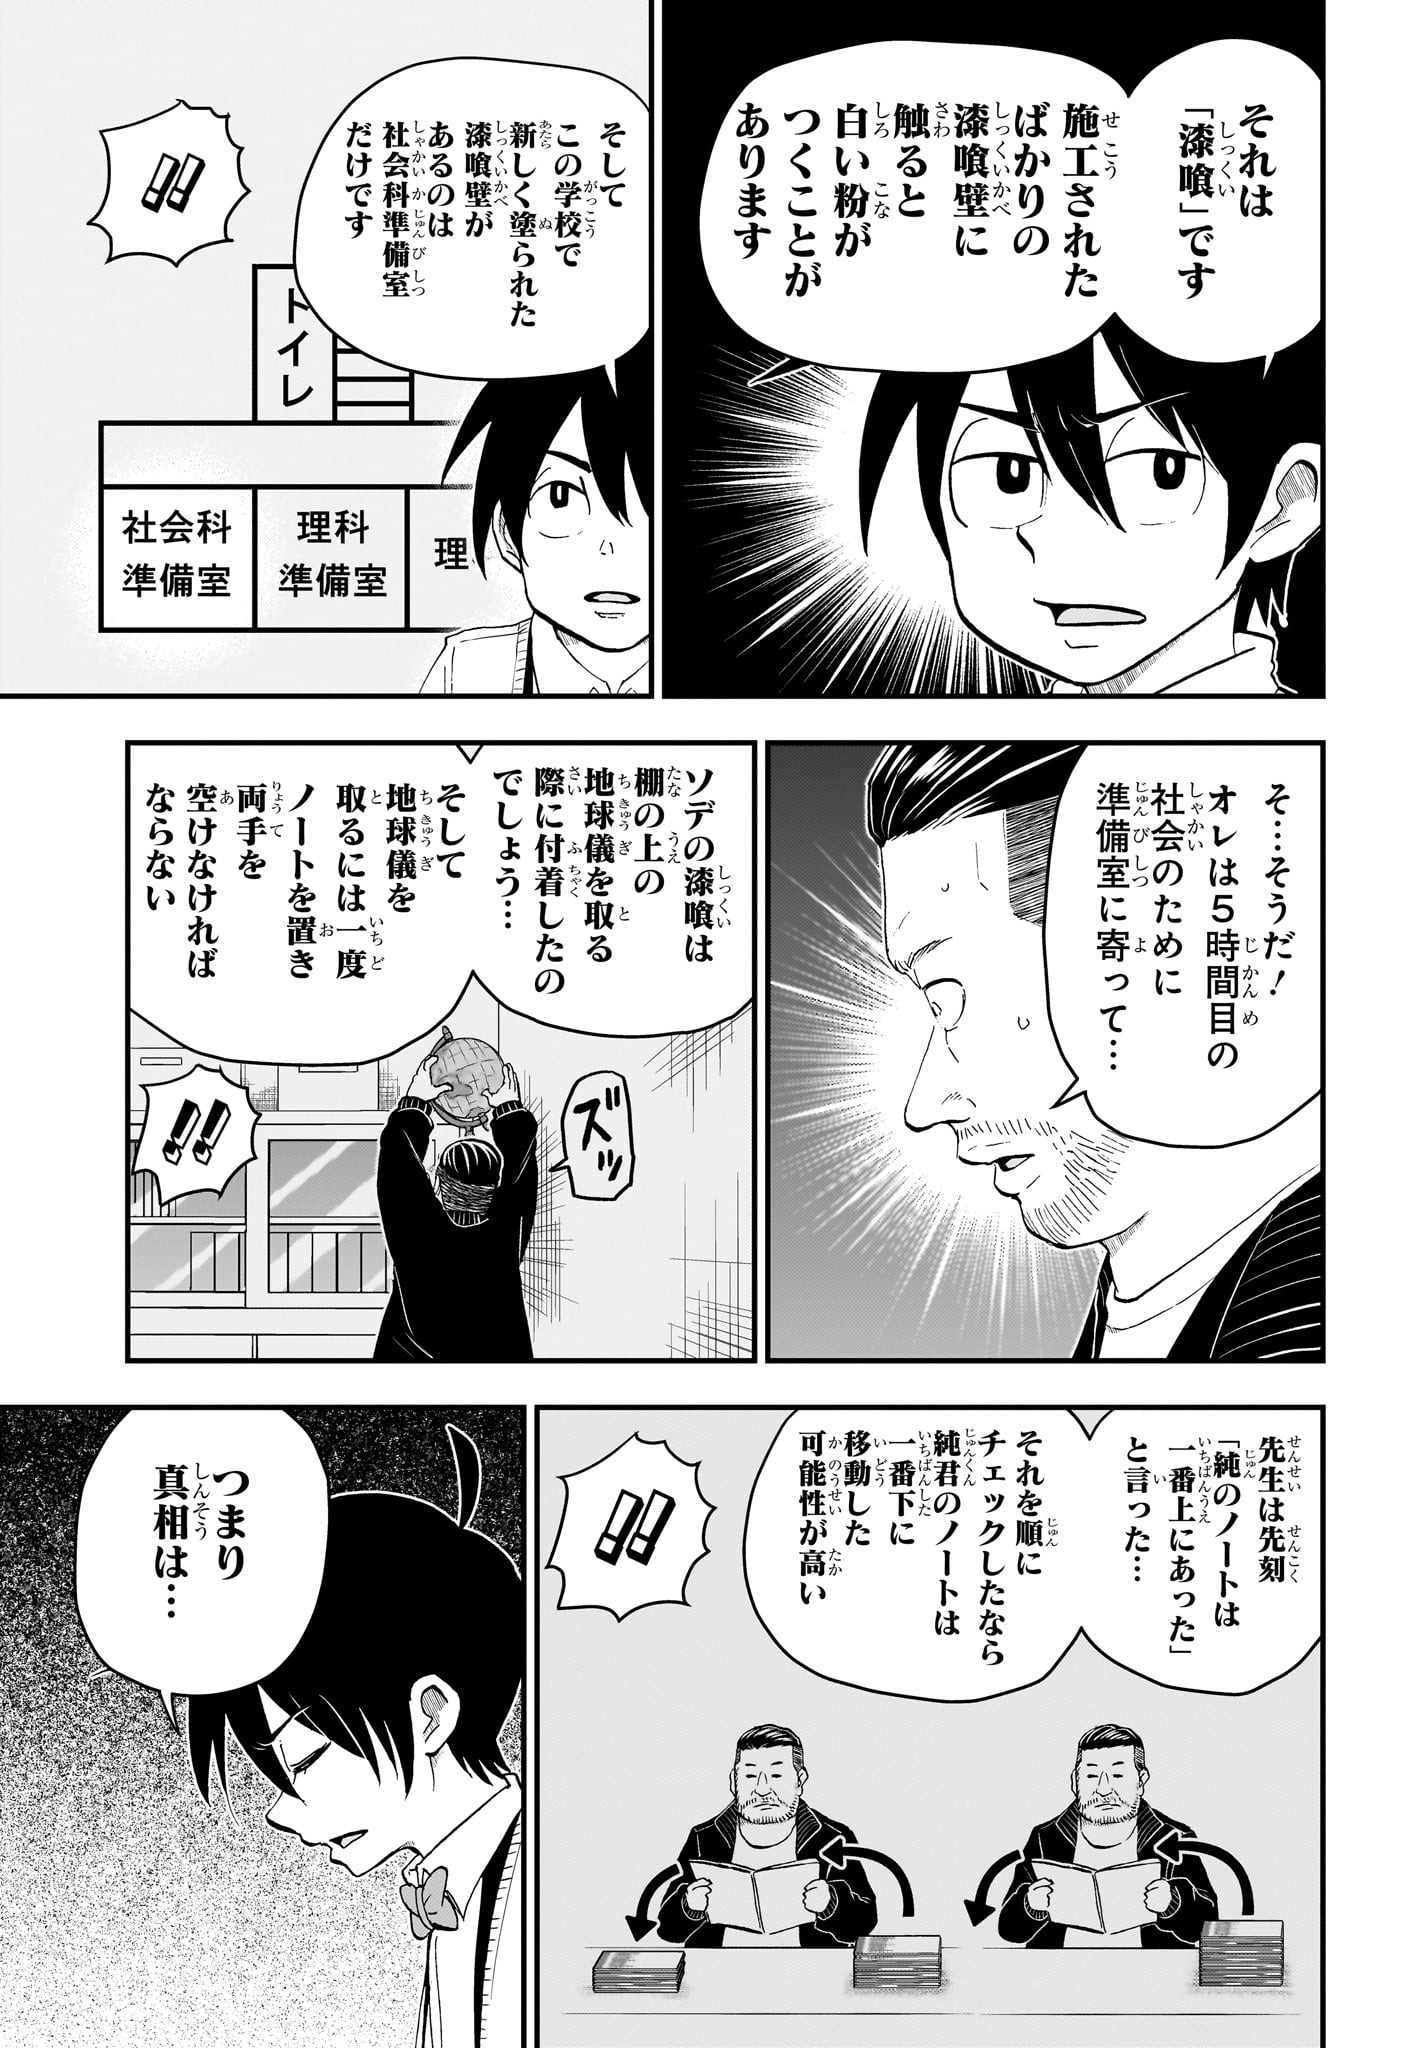 Boku to Roboko - Chapter 173 - Page 3